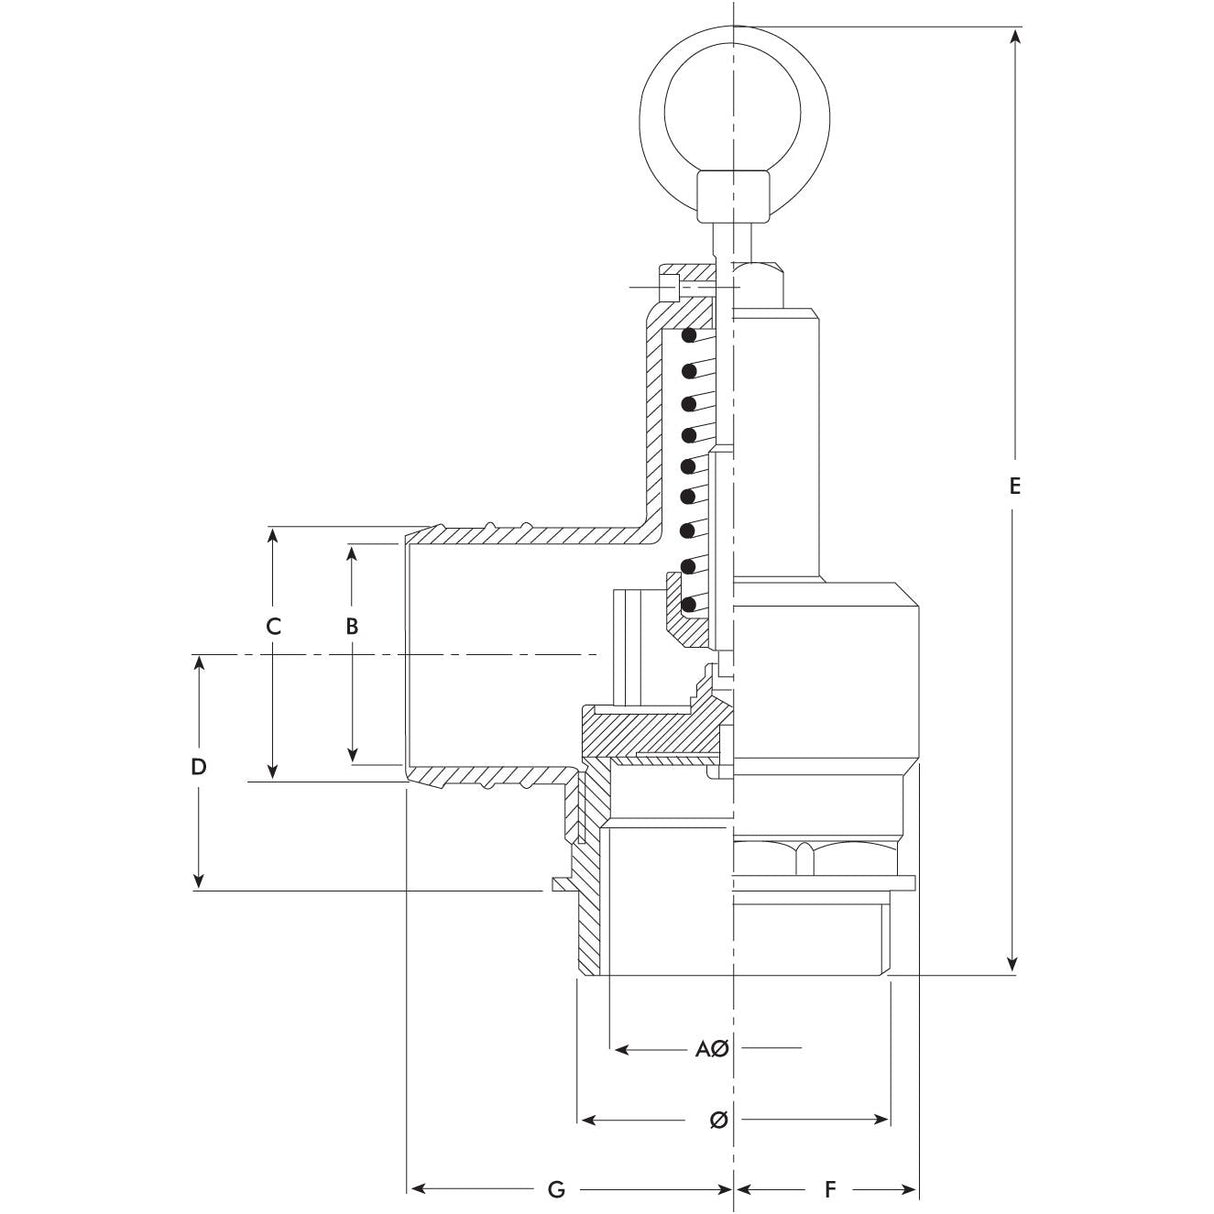 Pressure relief valve 1 1/4'' - S.59479 - Farming Parts